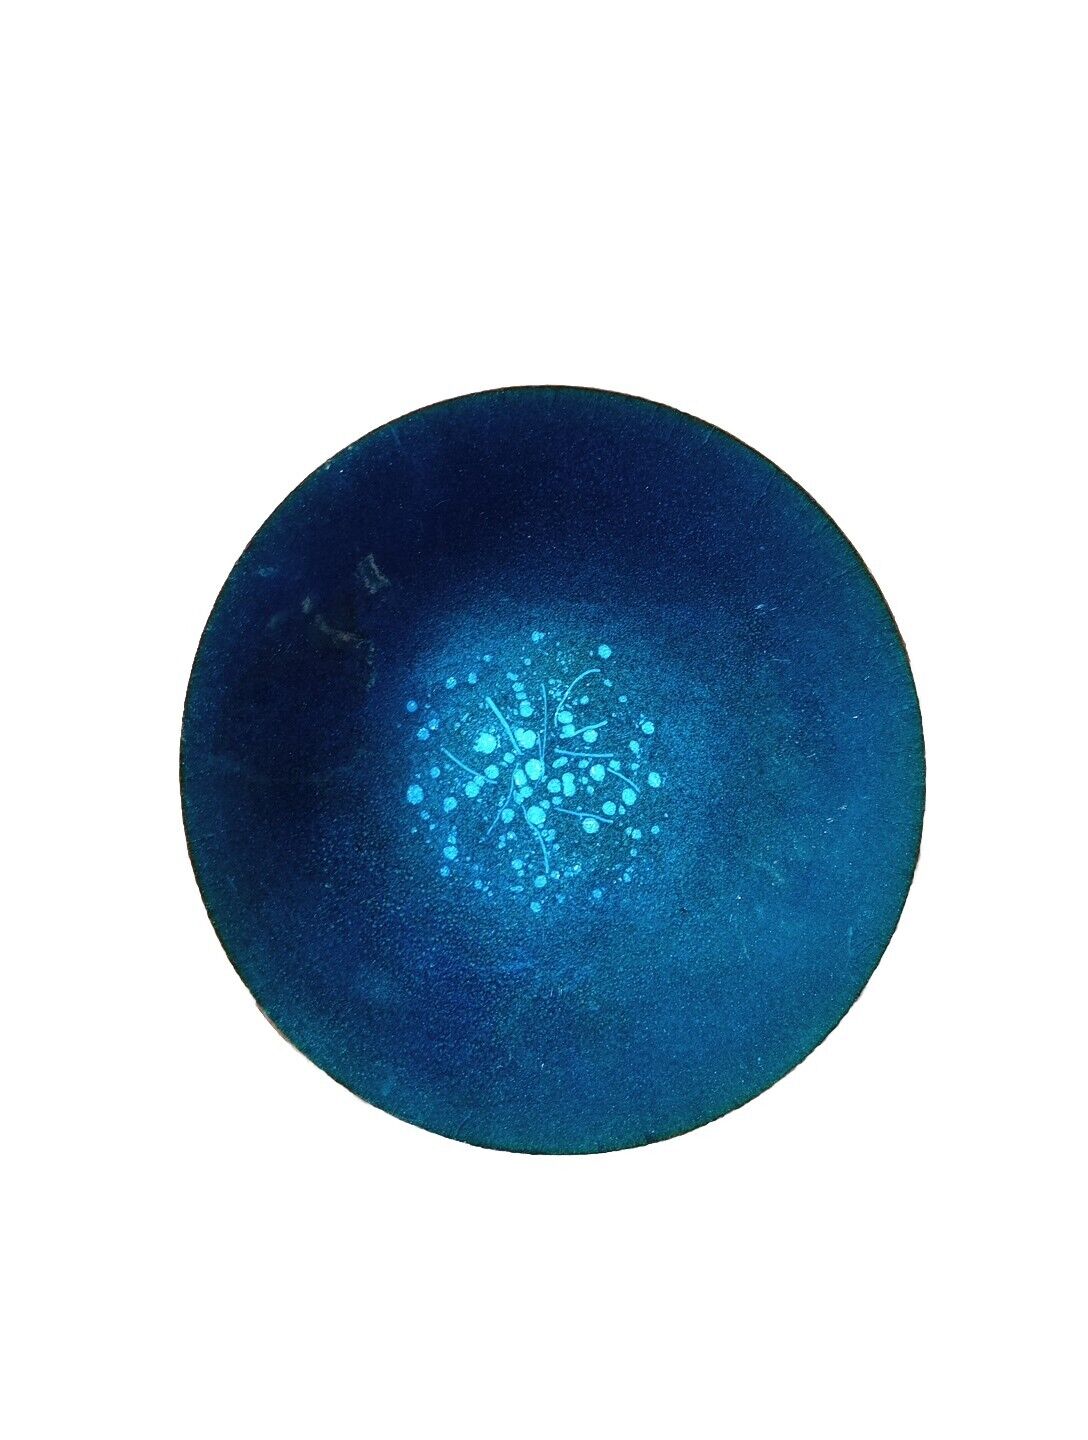 Enamel Blue On Copper Modern Art Plate 7 In Circumference 